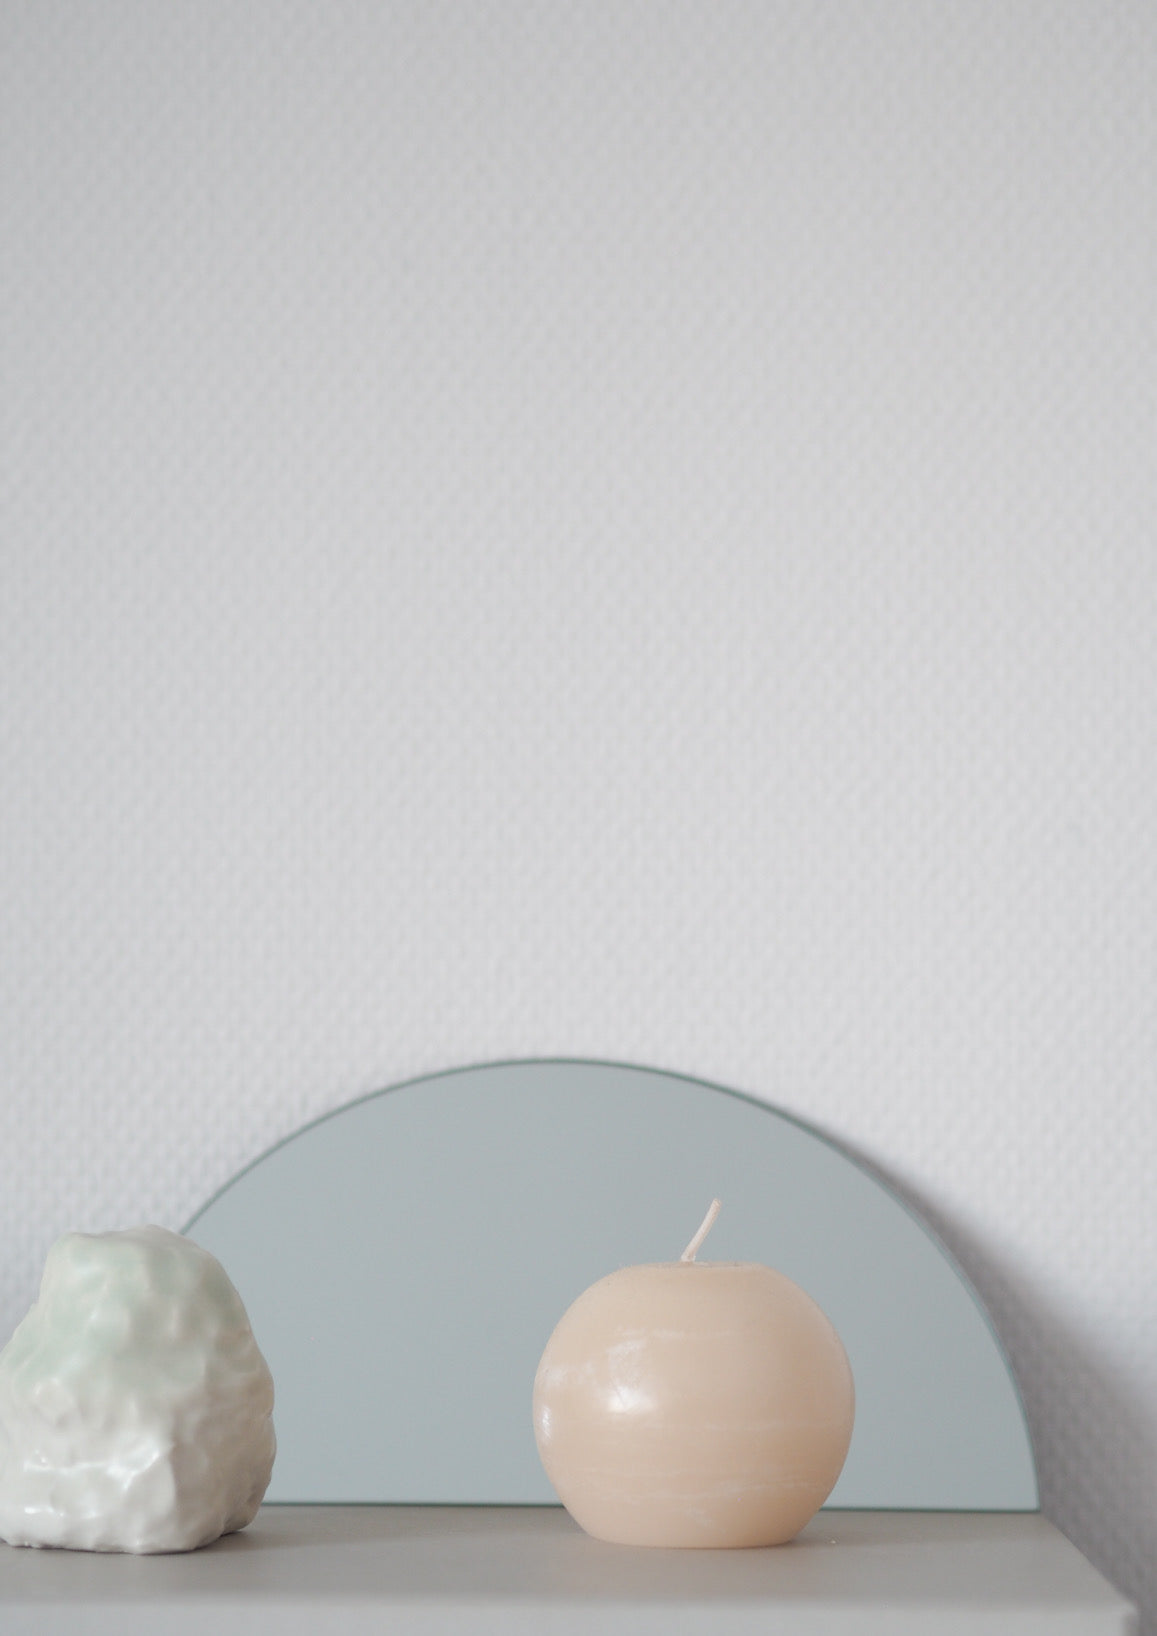 Porcelain vase by Krisztina Serra